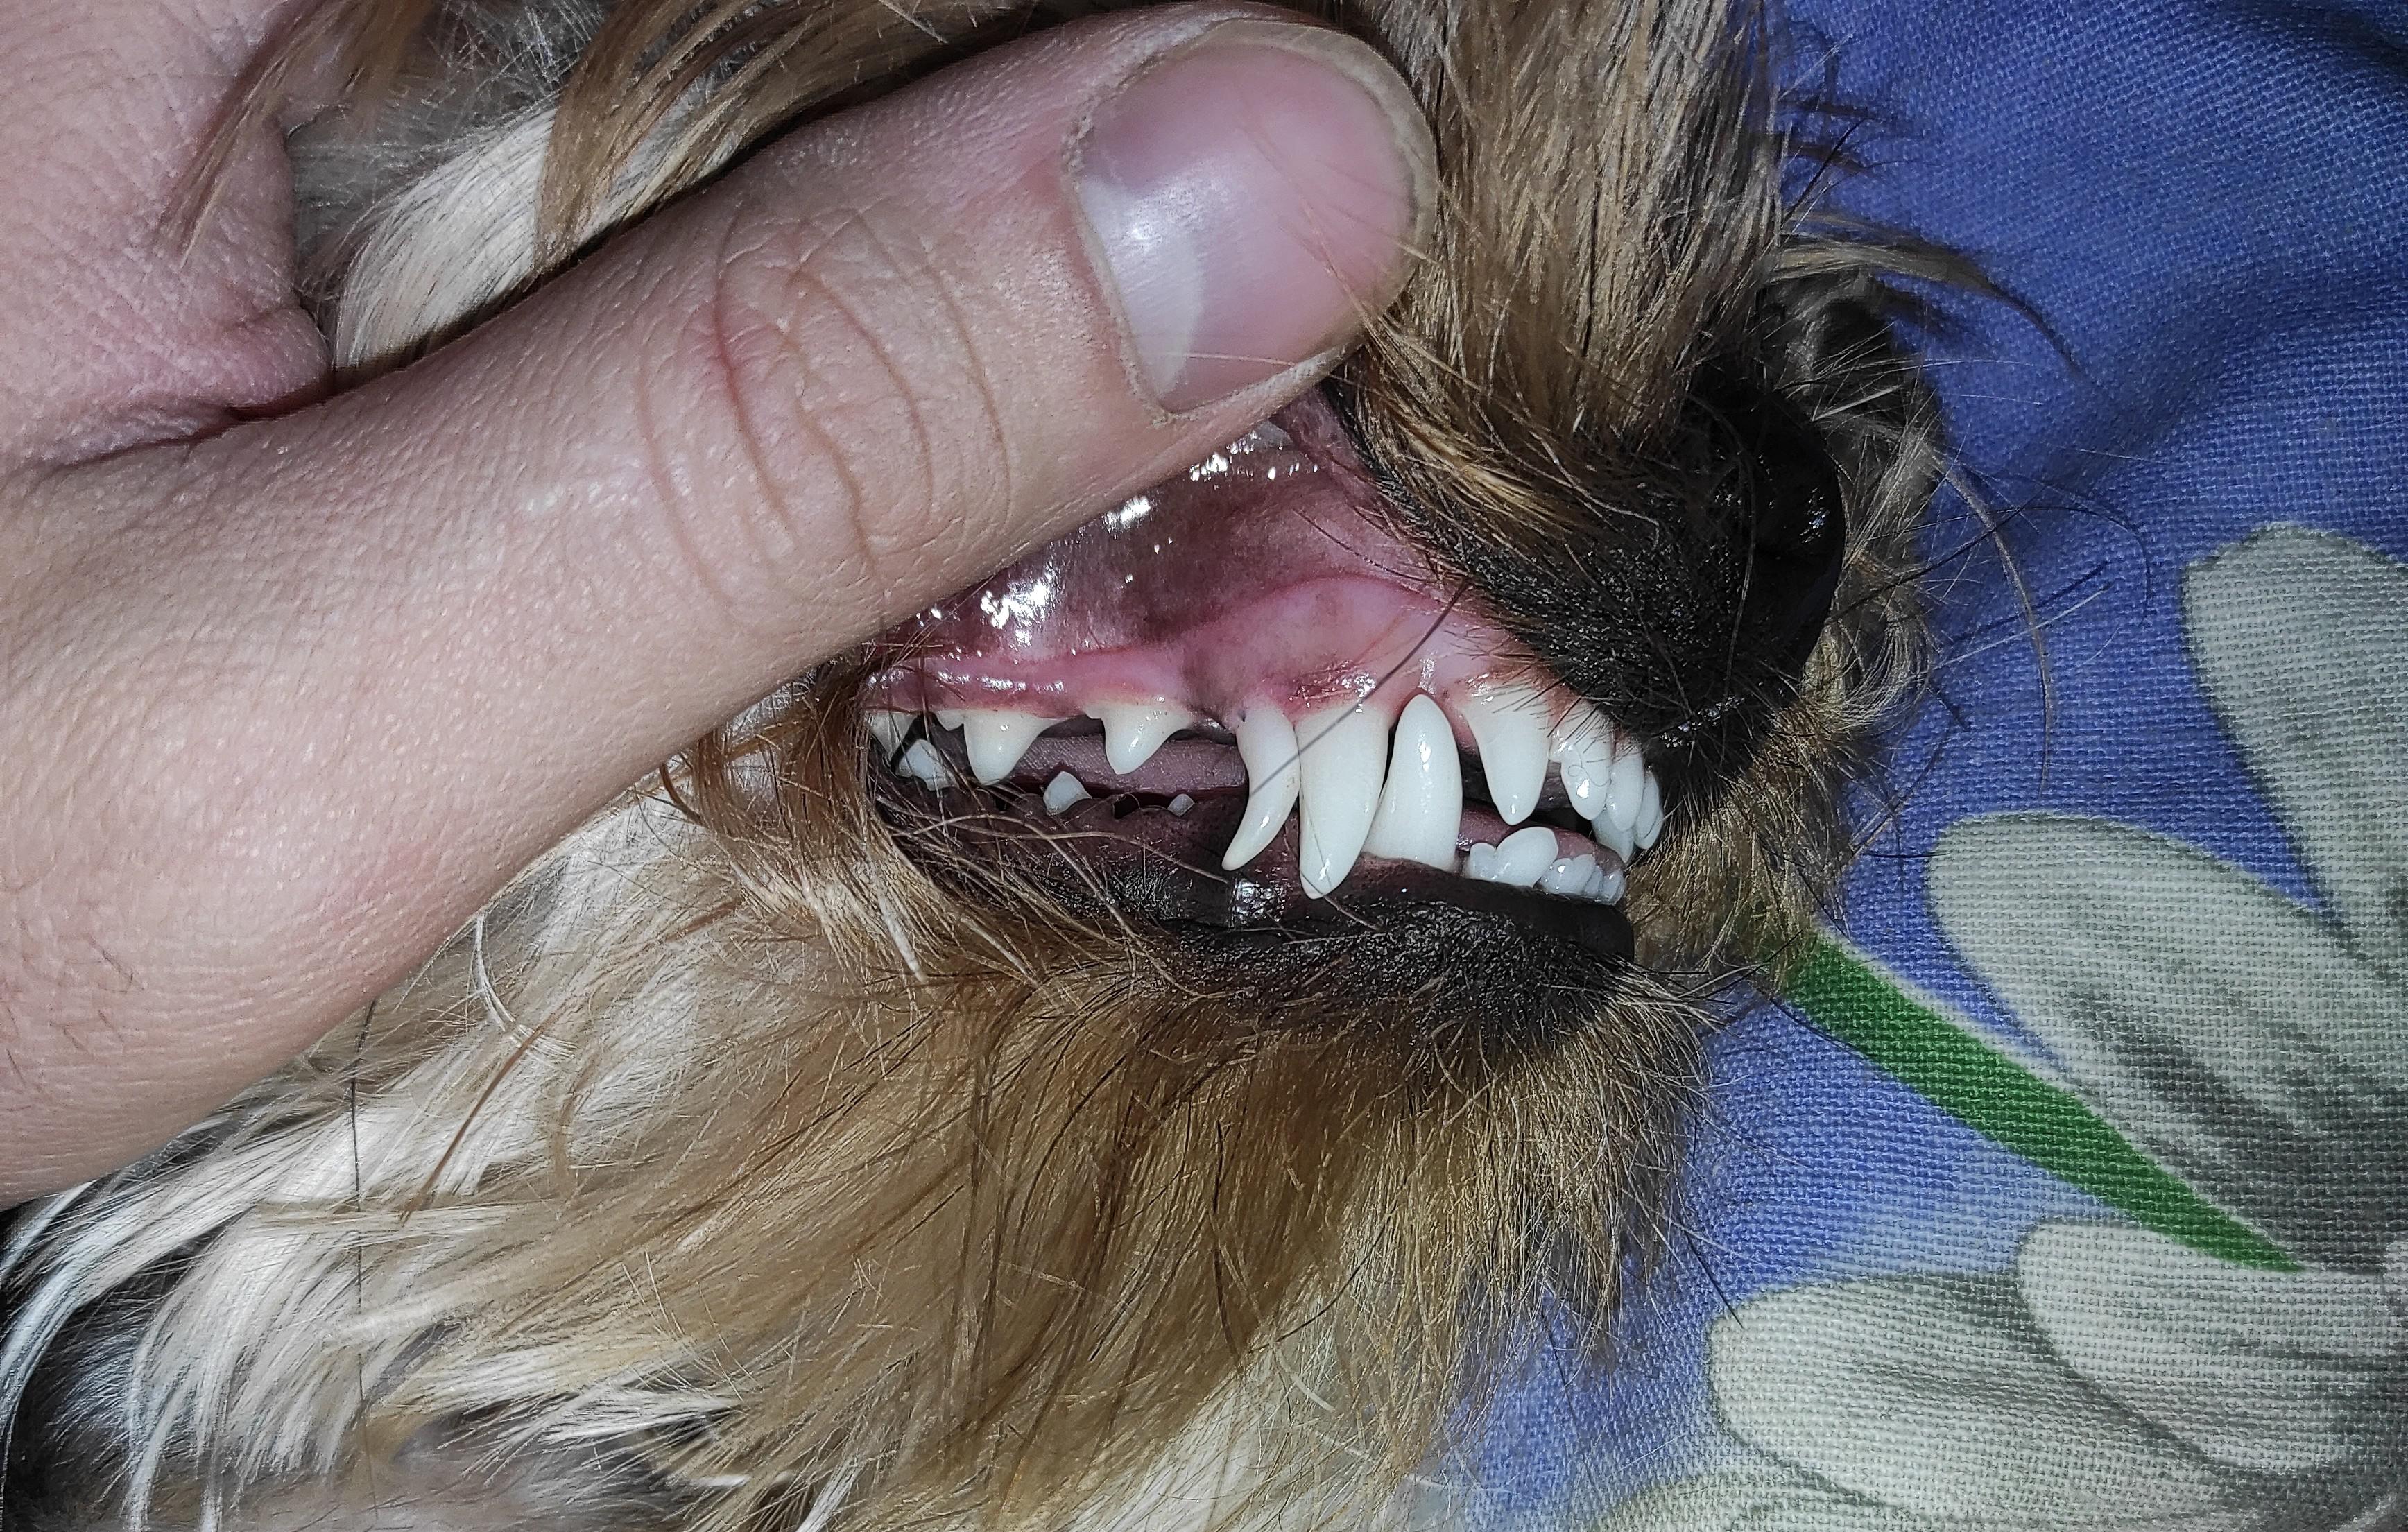 Удаление молочных зубов у собак